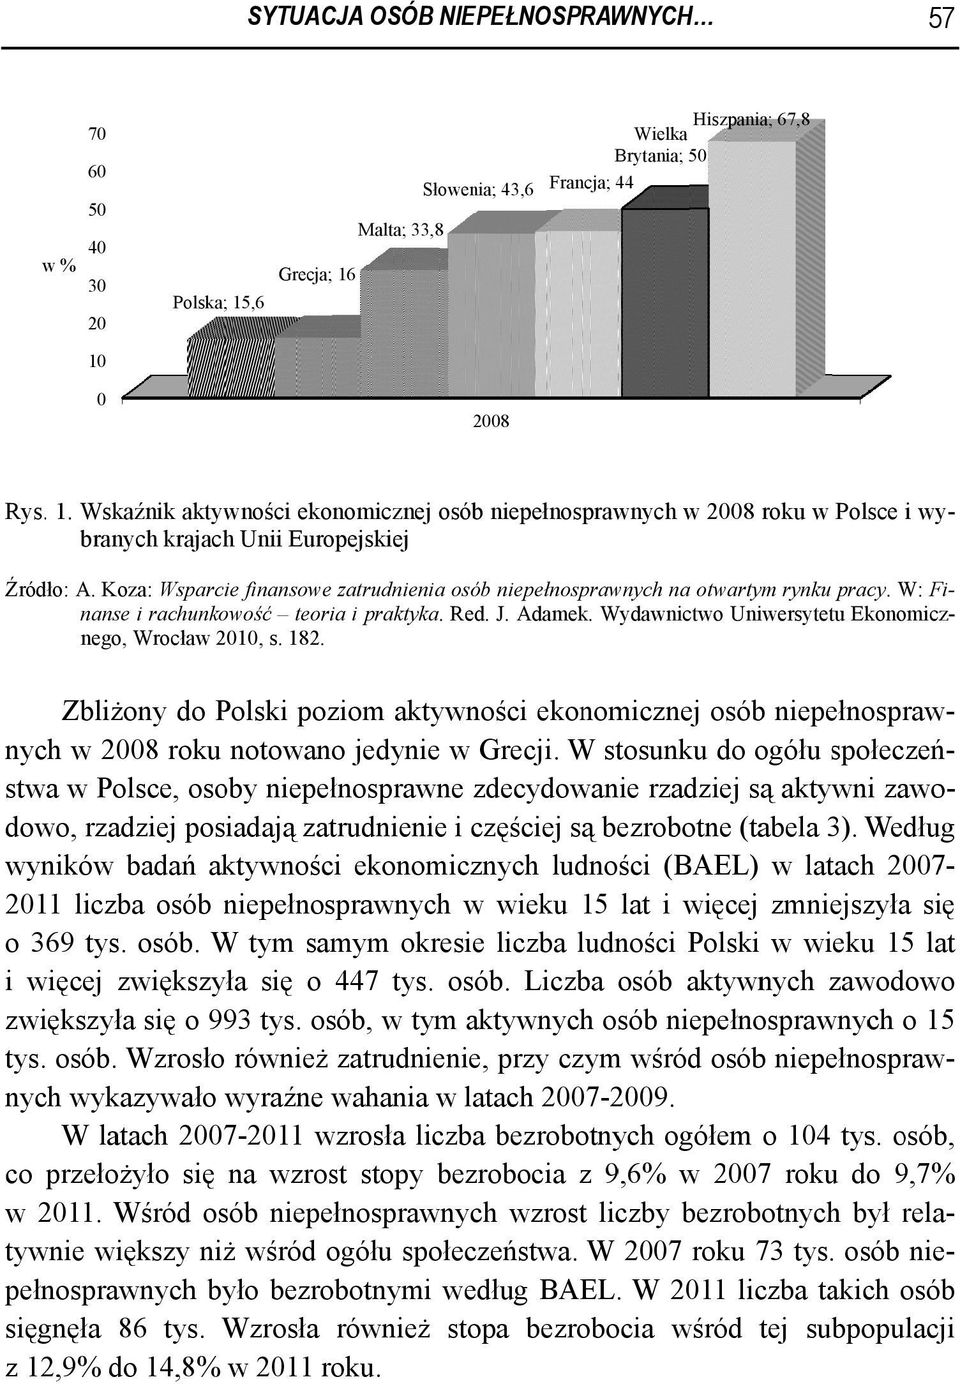 Wydawnictwo Uniwersytetu Ekonomicz- nego, Wrocław 2010, s. 182. Zbliżonyy do Pols ski poziom akty ywności ekonomicznej osób niepełnospraw- nych w 2008 roku notowano jedynie w Grecji.